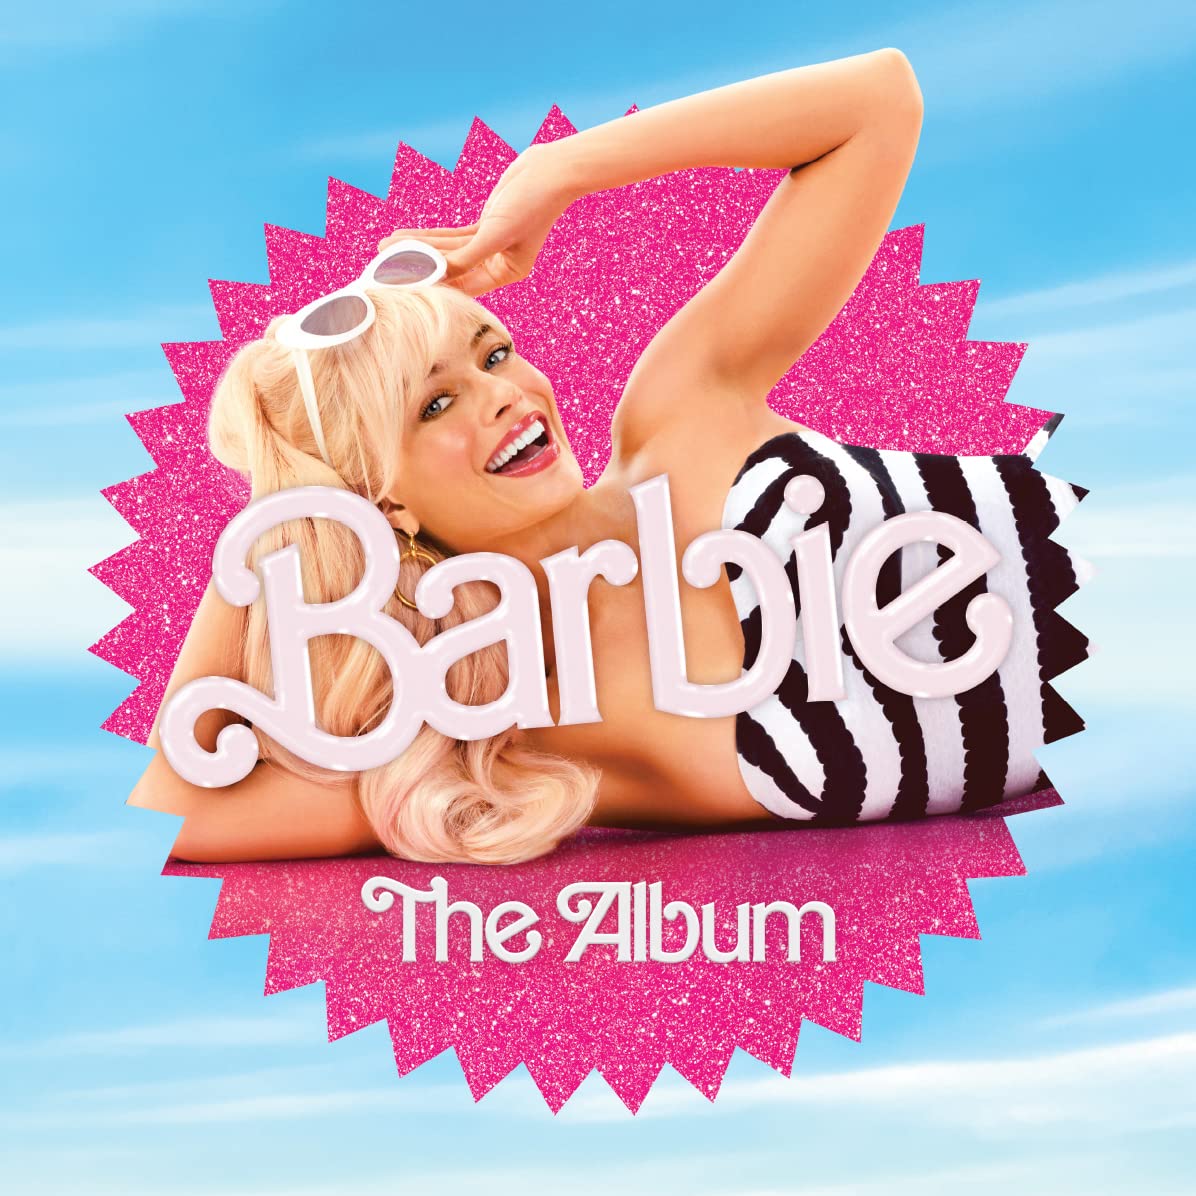 BARBIE THE ALBUM VINYLE